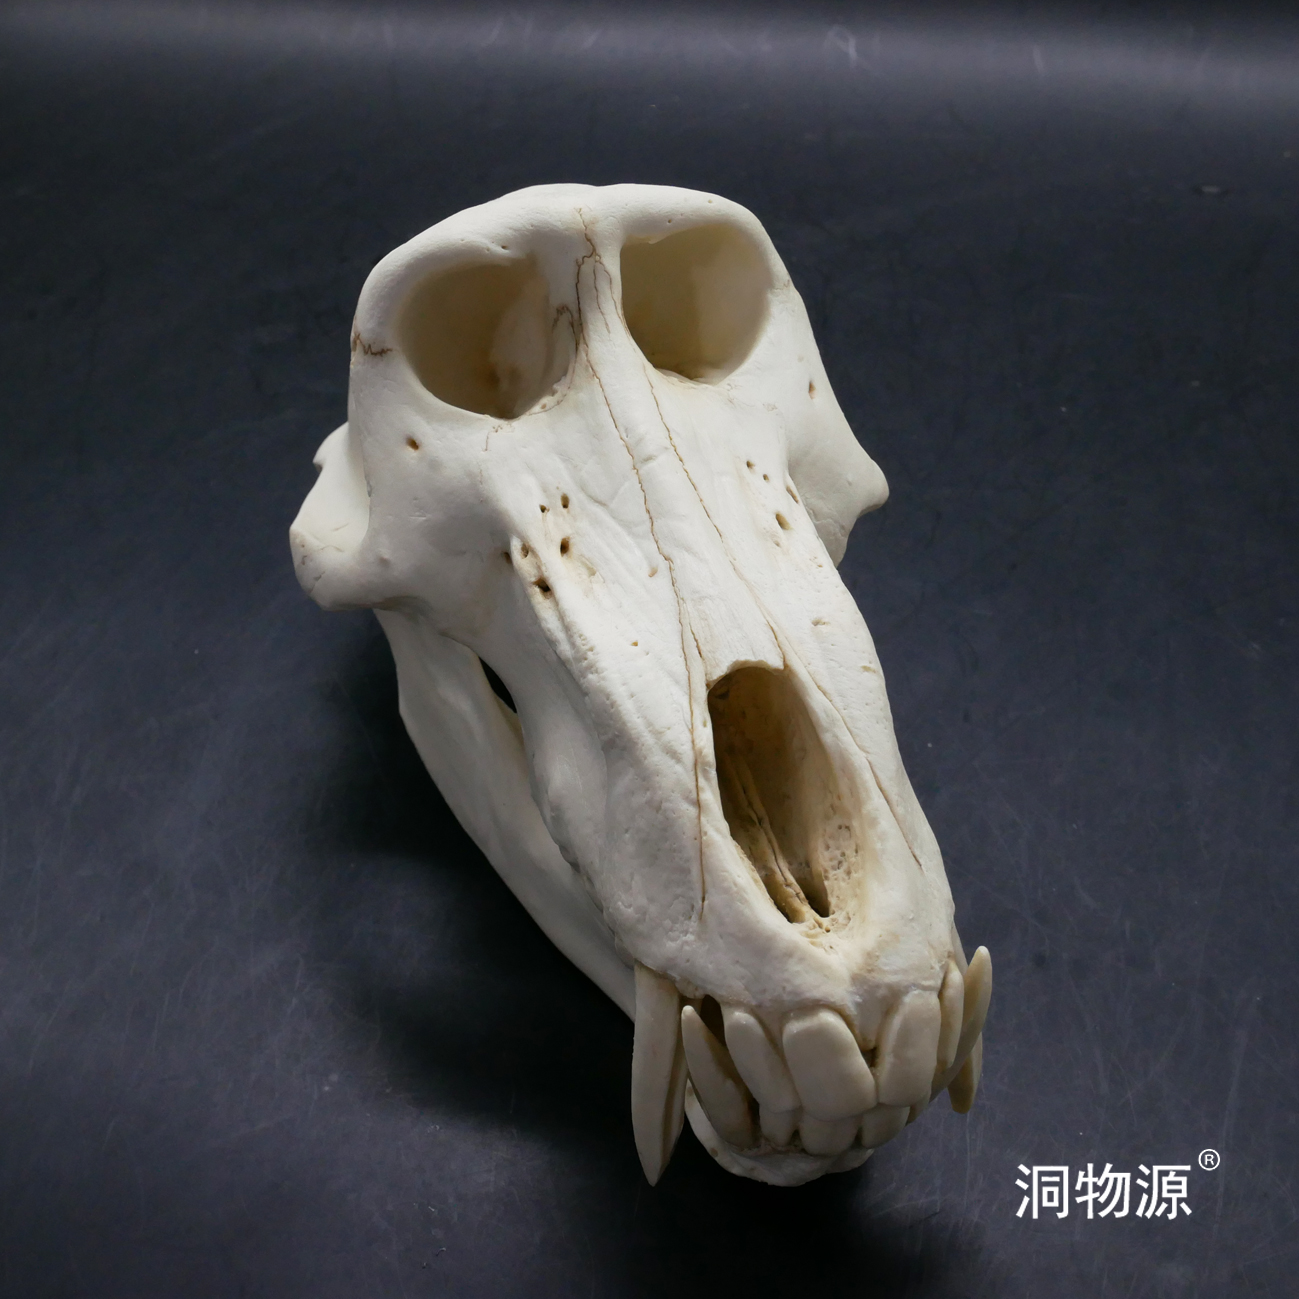 【洞物源】 黑猩猩头骨科教标本模型手办雕像素描 1:1